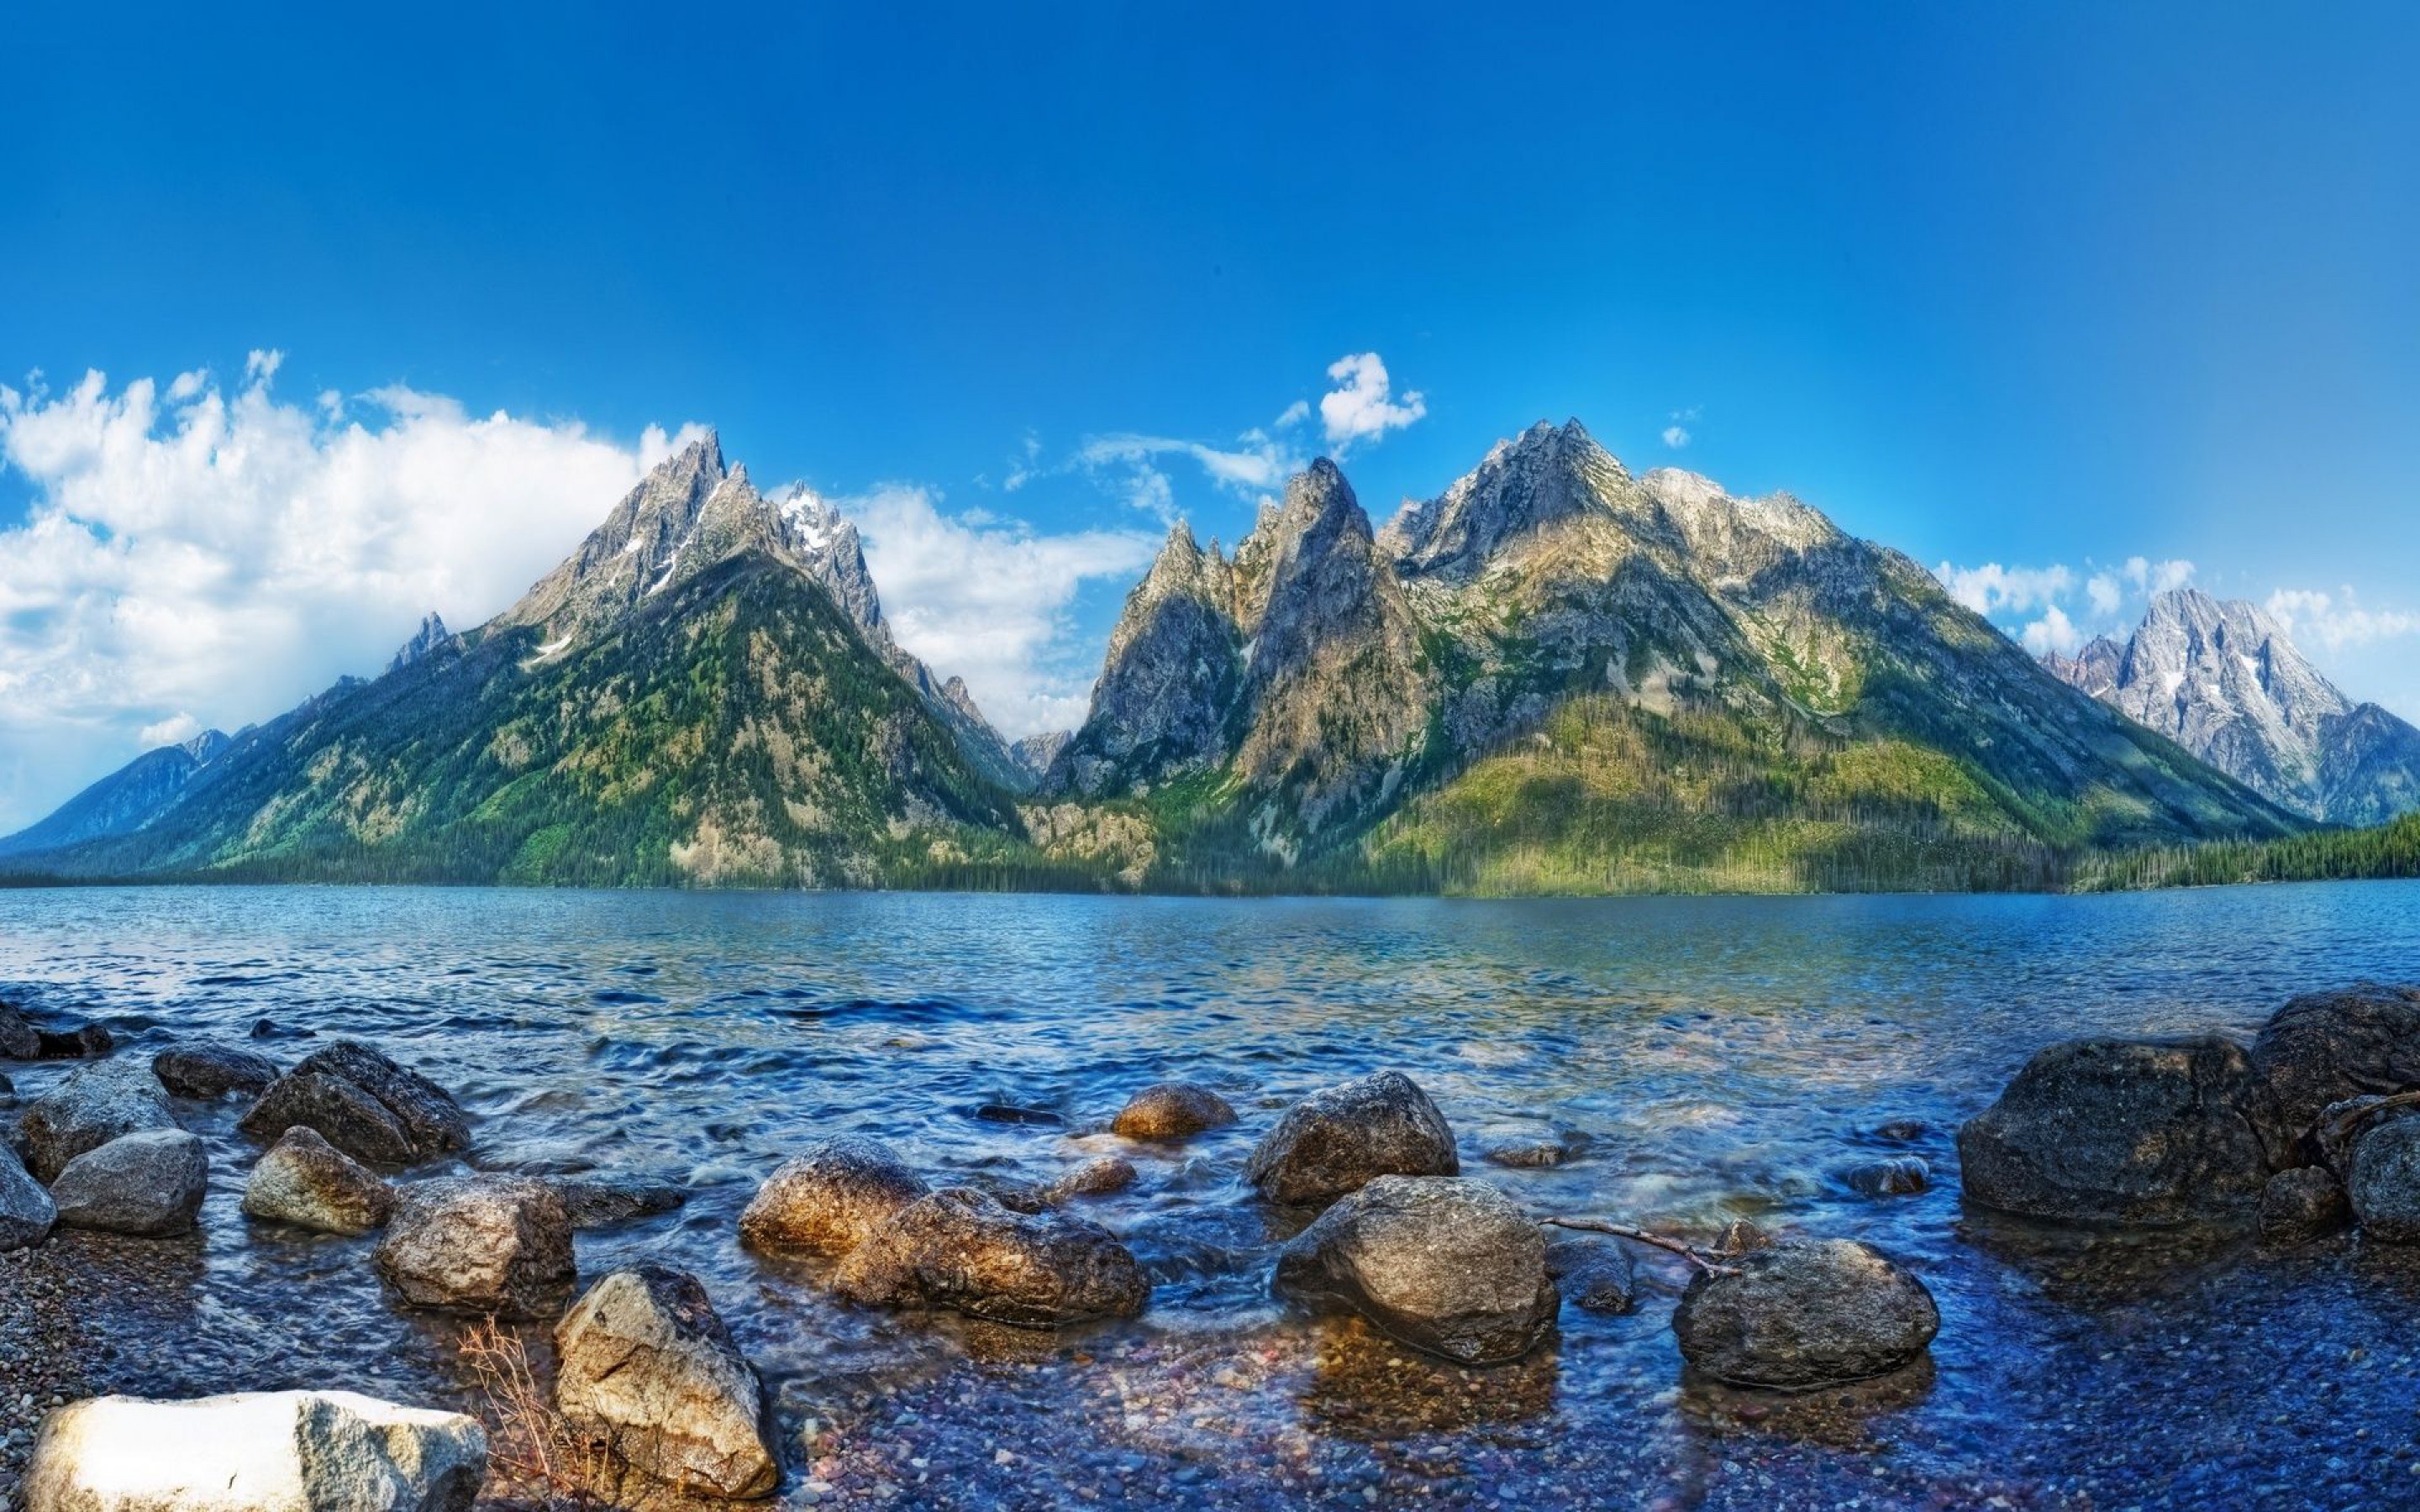 デスクトップ壁紙hdワイドスクリーン無料ダウンロード,自然の風景,山,自然,水域,山脈